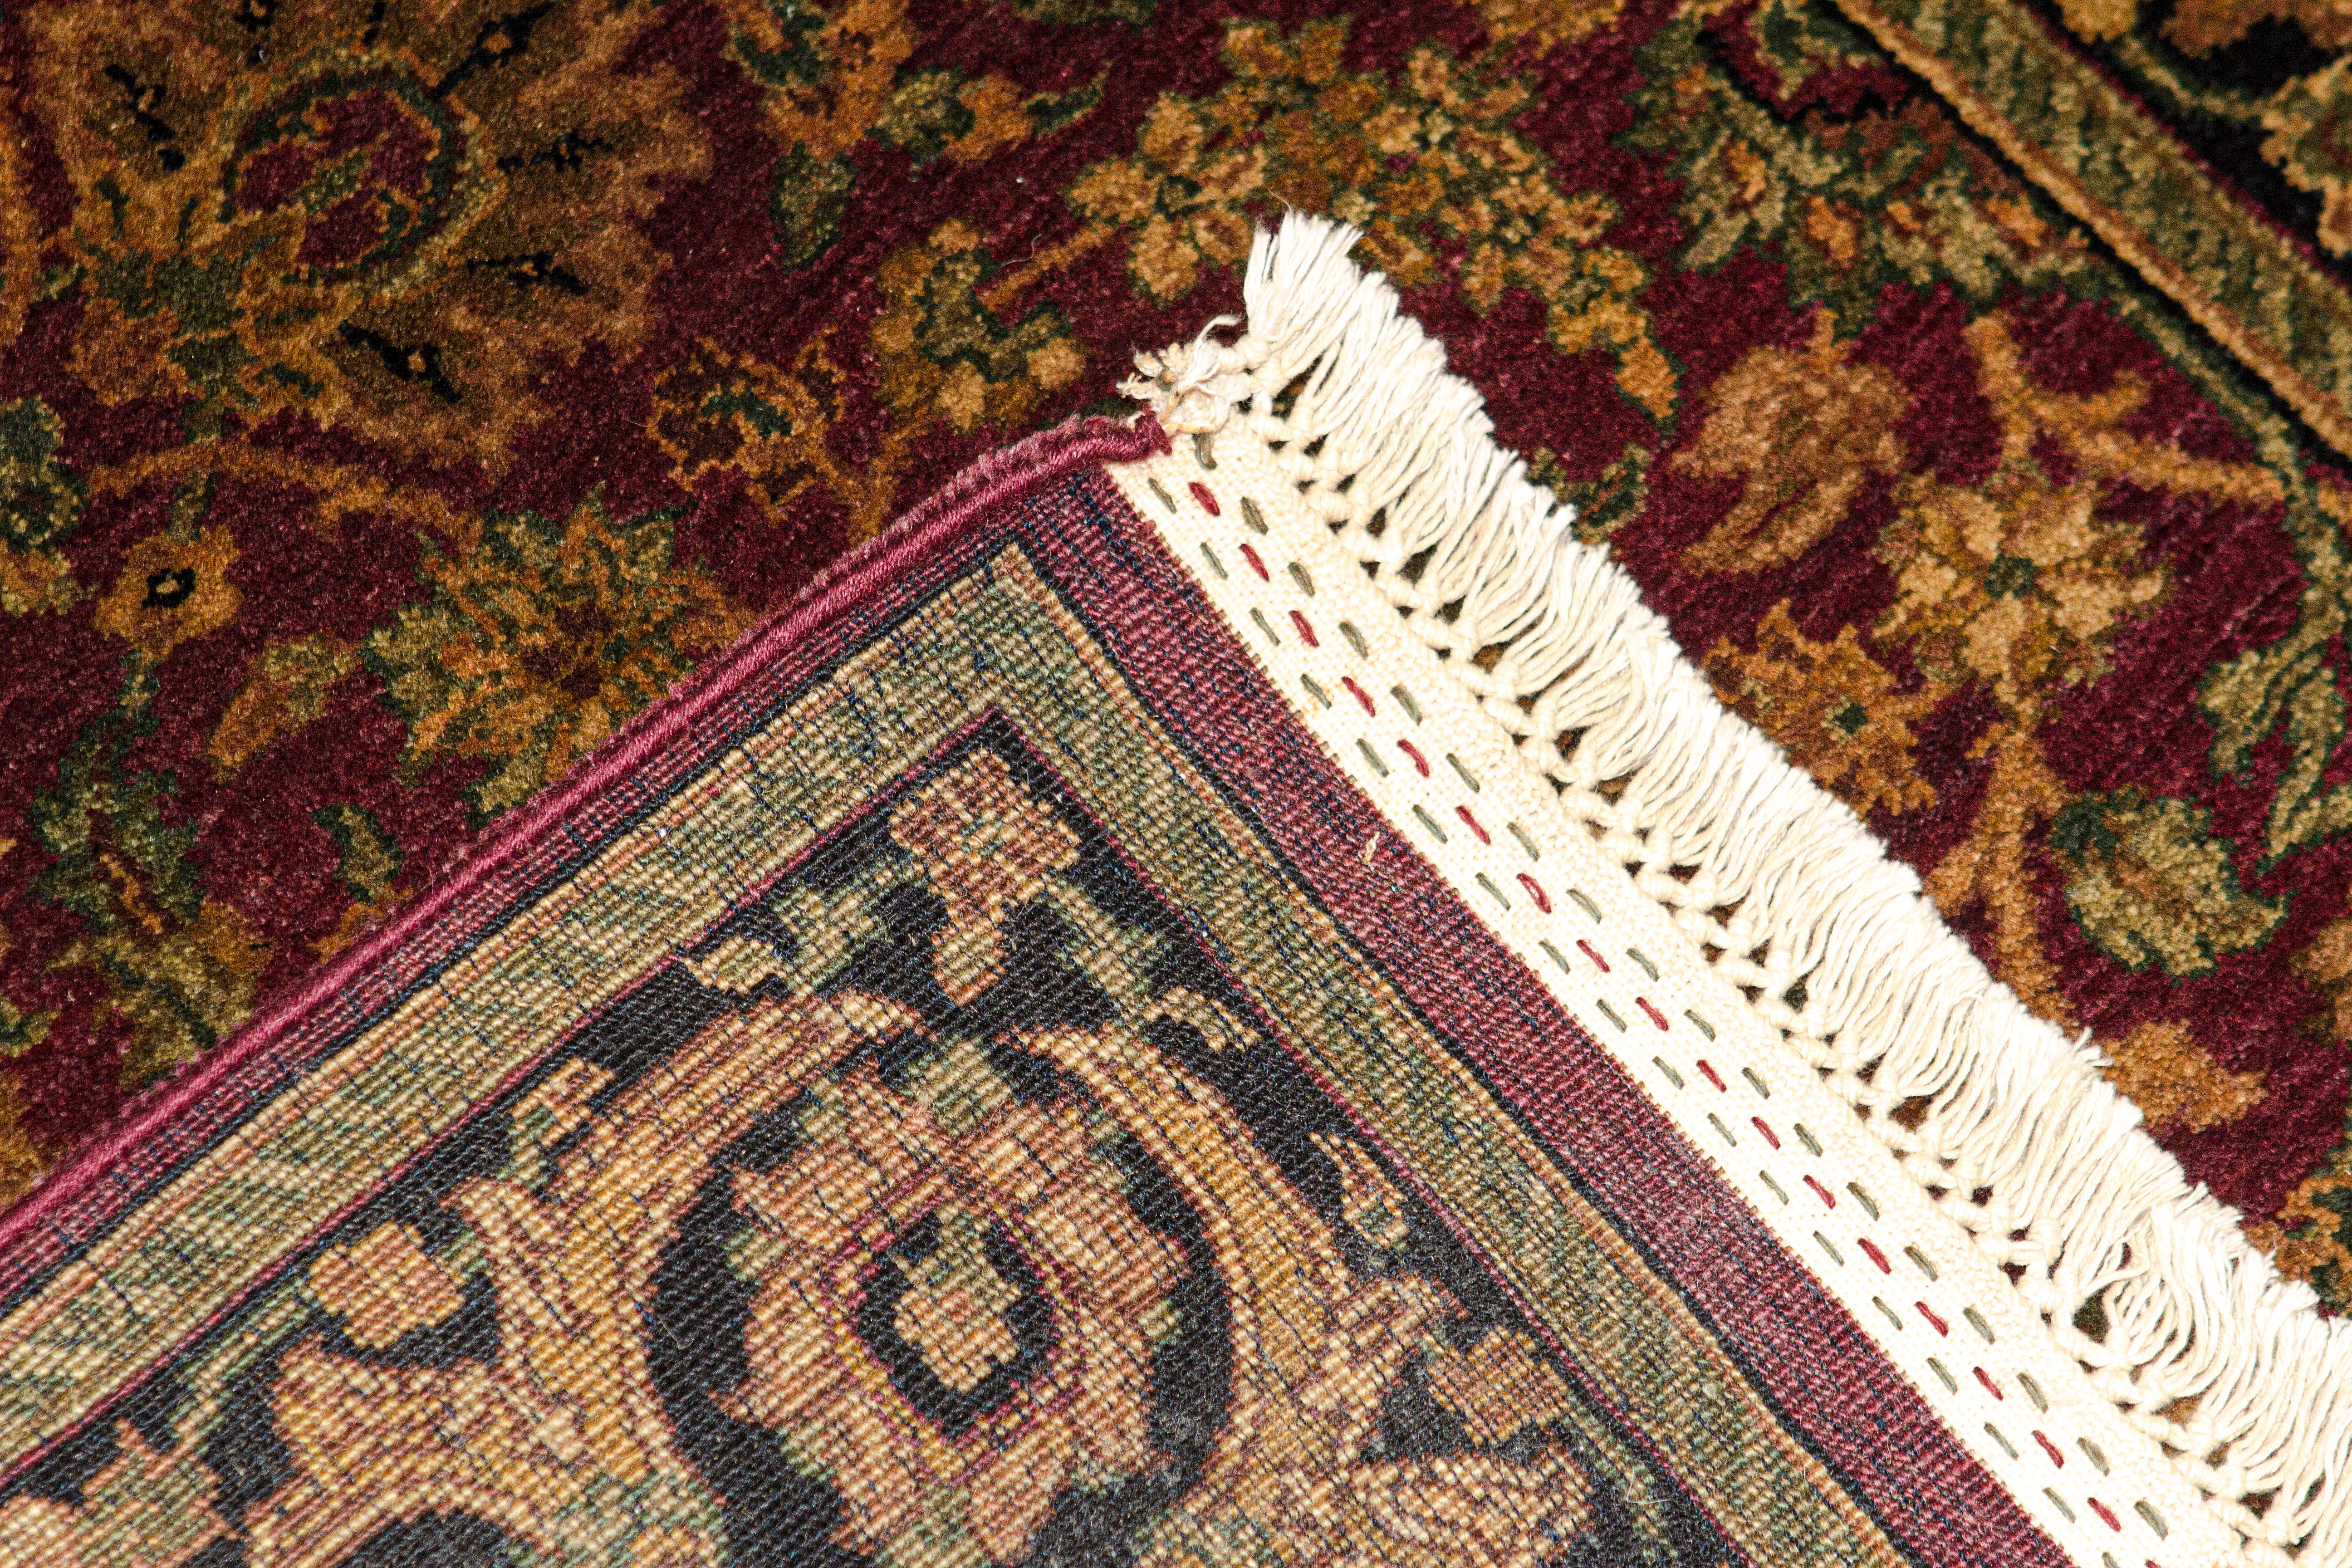 Les styles authentiques des chefs-d'œuvre traditionnels orientaux sont recréés ici, reflétant une beauté sans âge dans la présentation de ces tapis traditionnels tissés à la main. Chaque pièce est unique et représente des tapis d'une époque révolue.